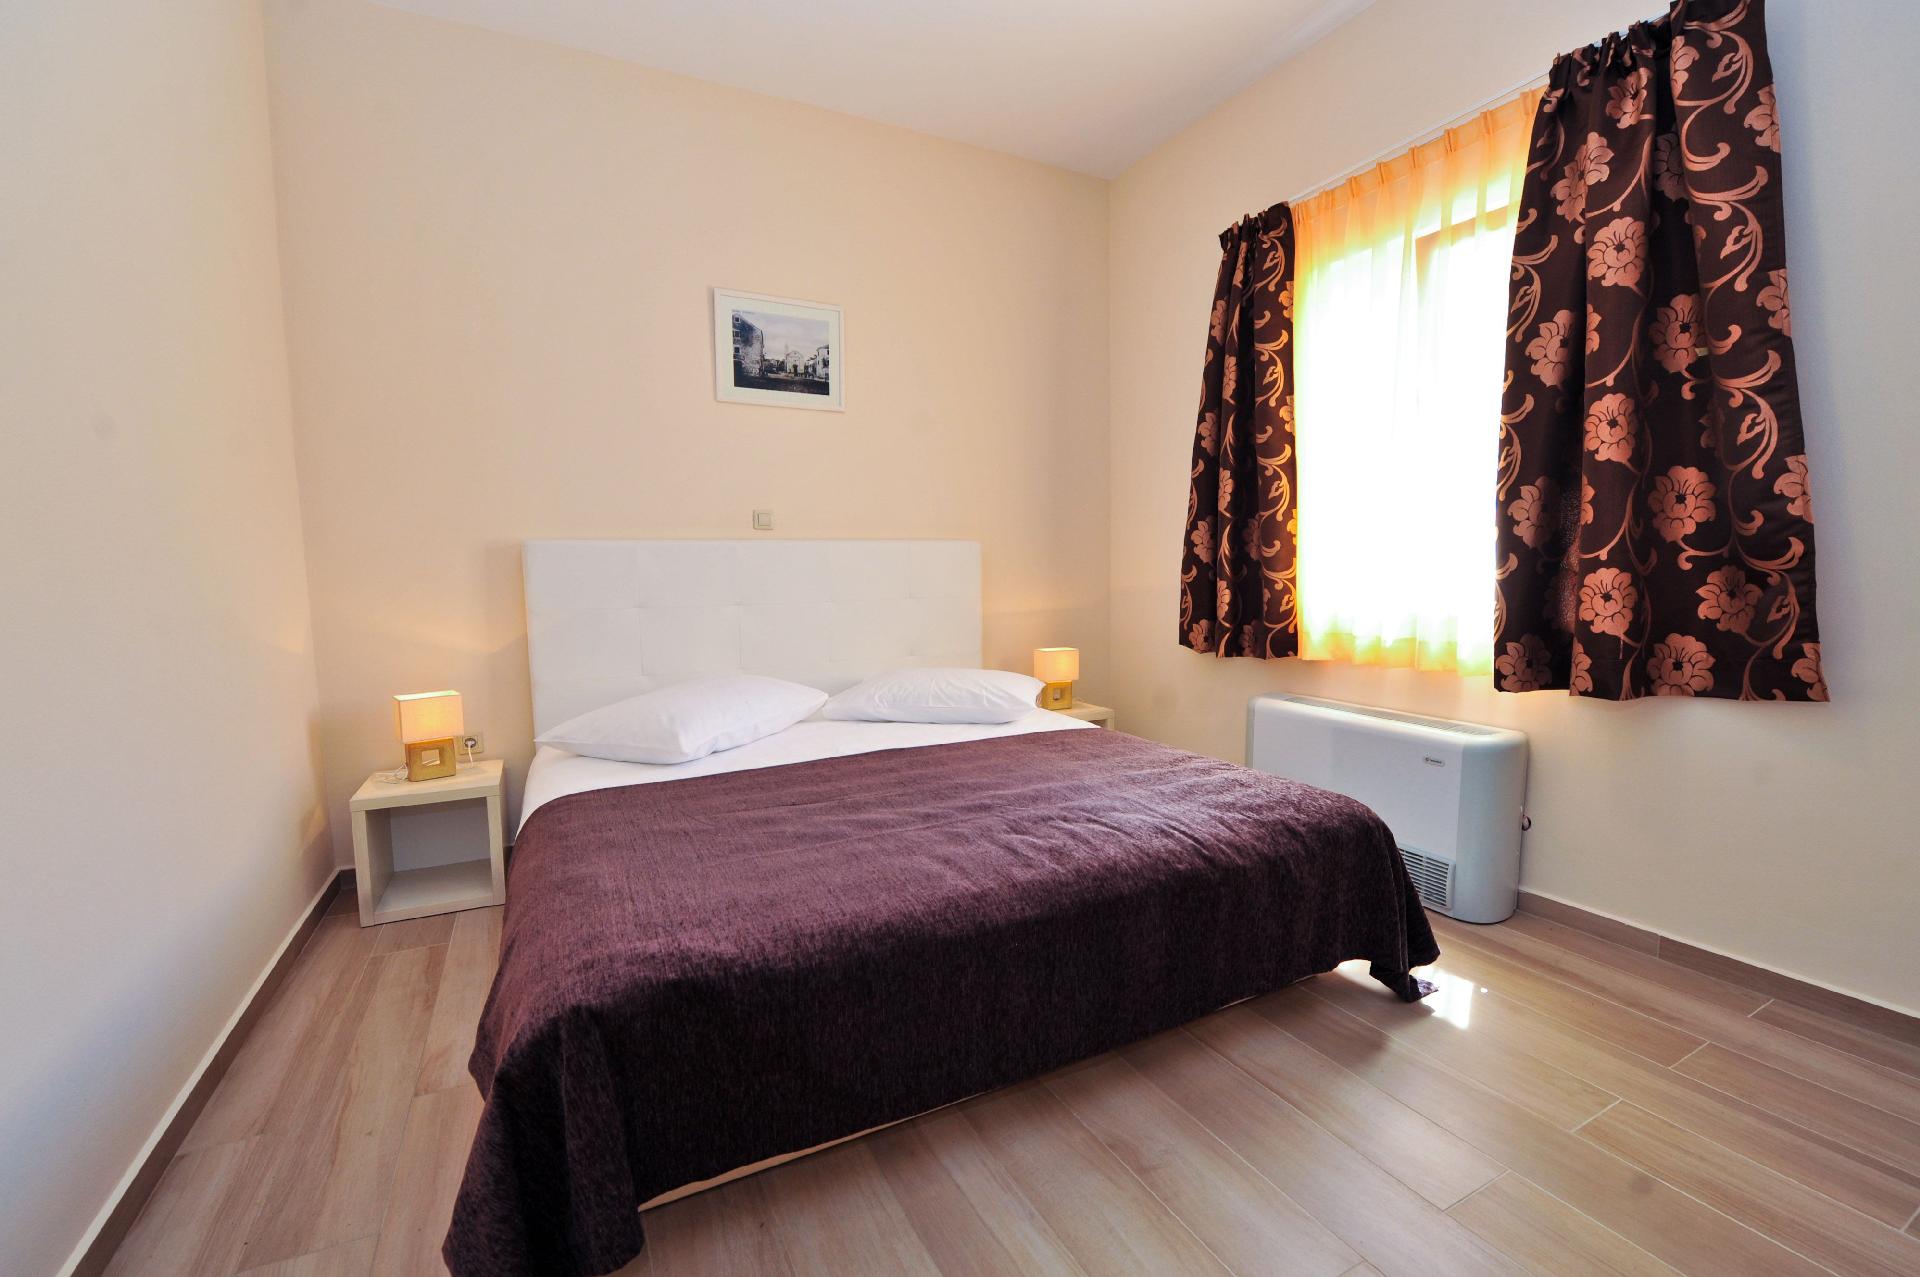 Ferienwohnung für 4 Personen ca. 45 m² i Ferienhaus in Dalmatien